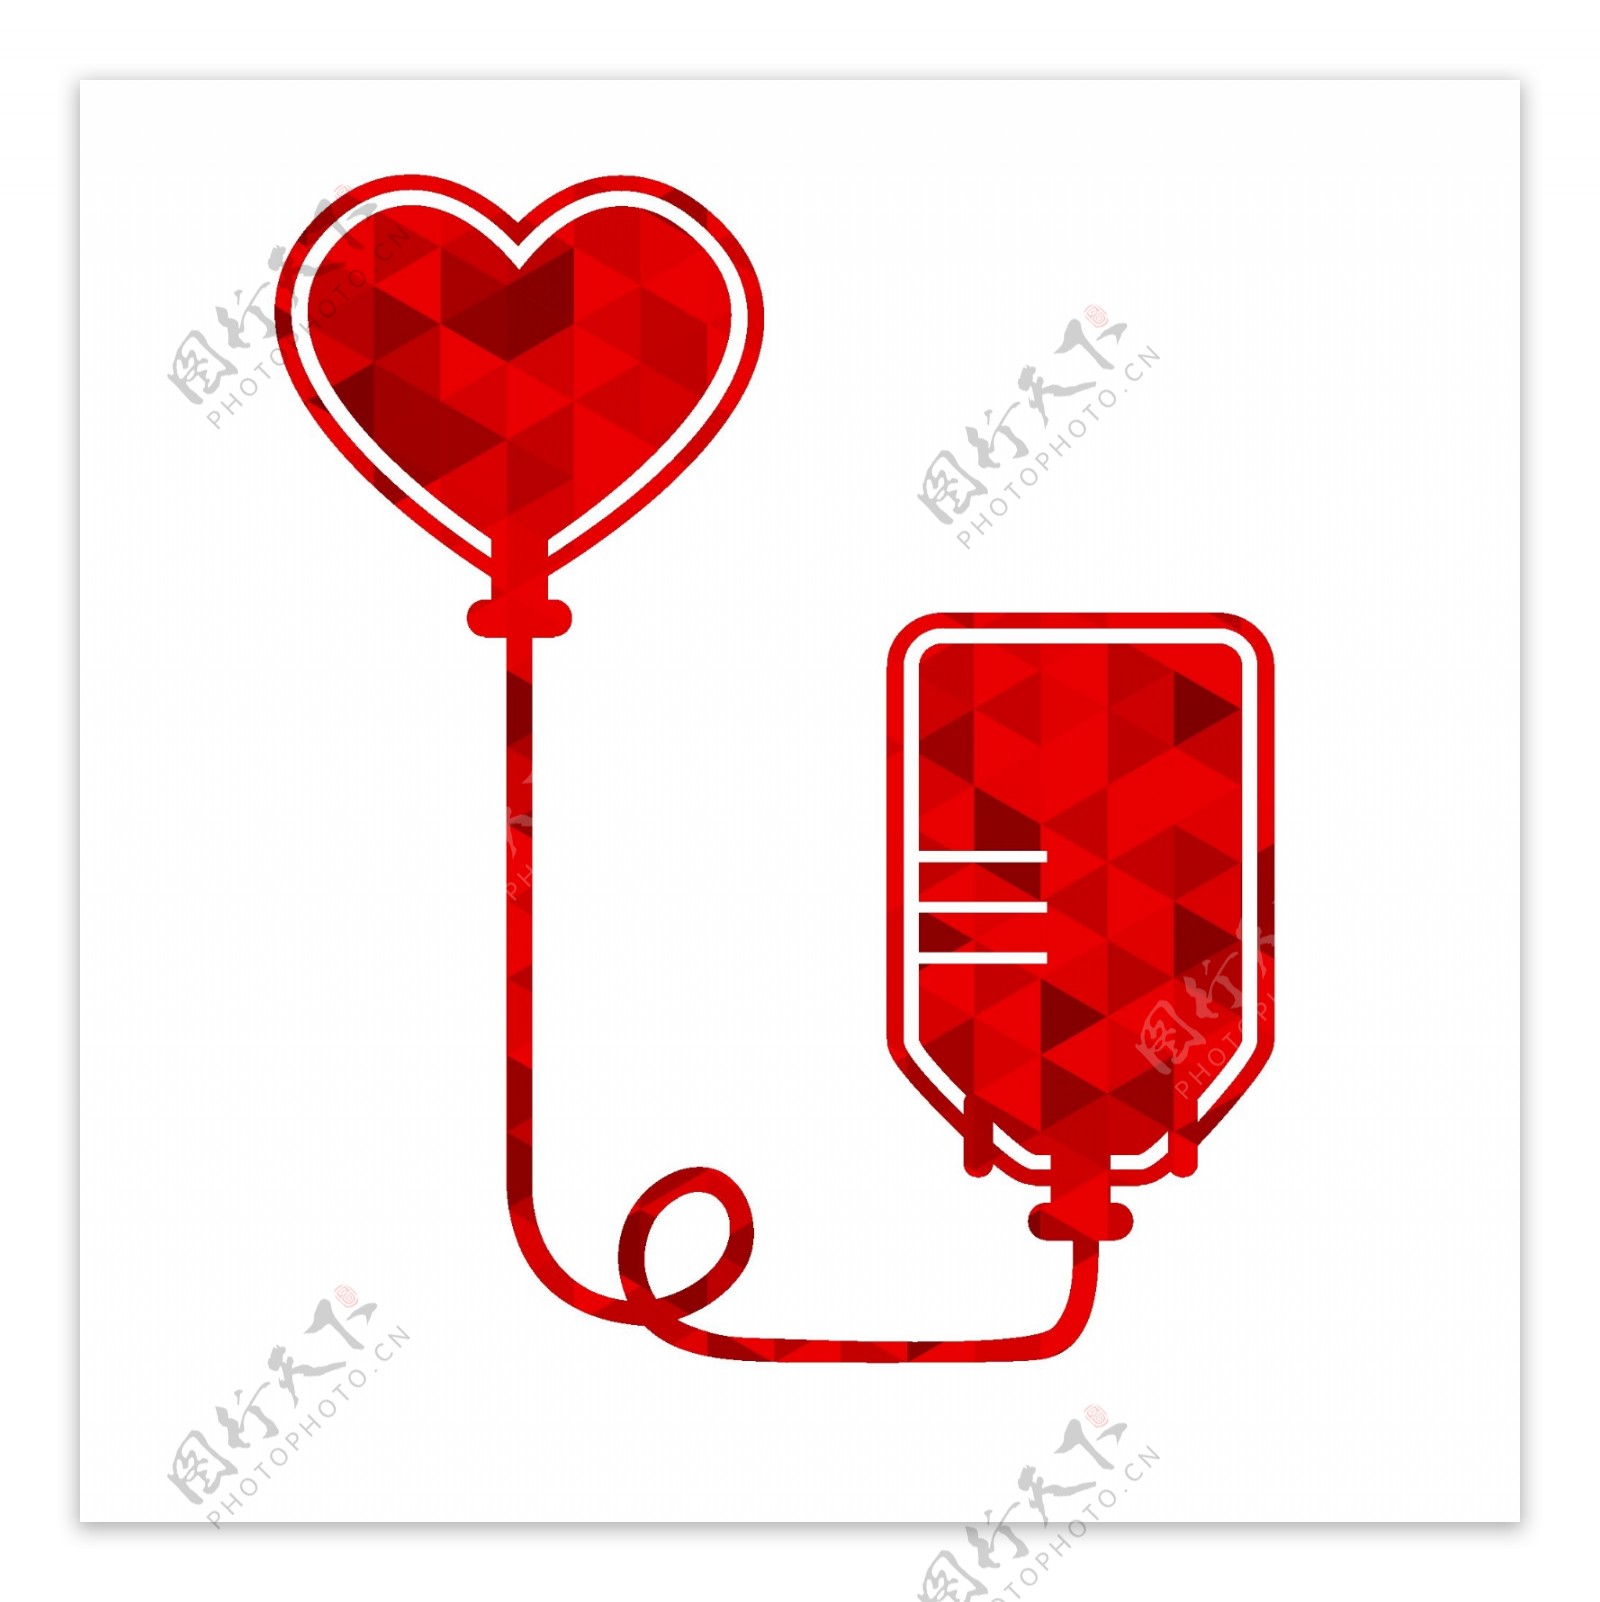 创意献血标志矢量素材